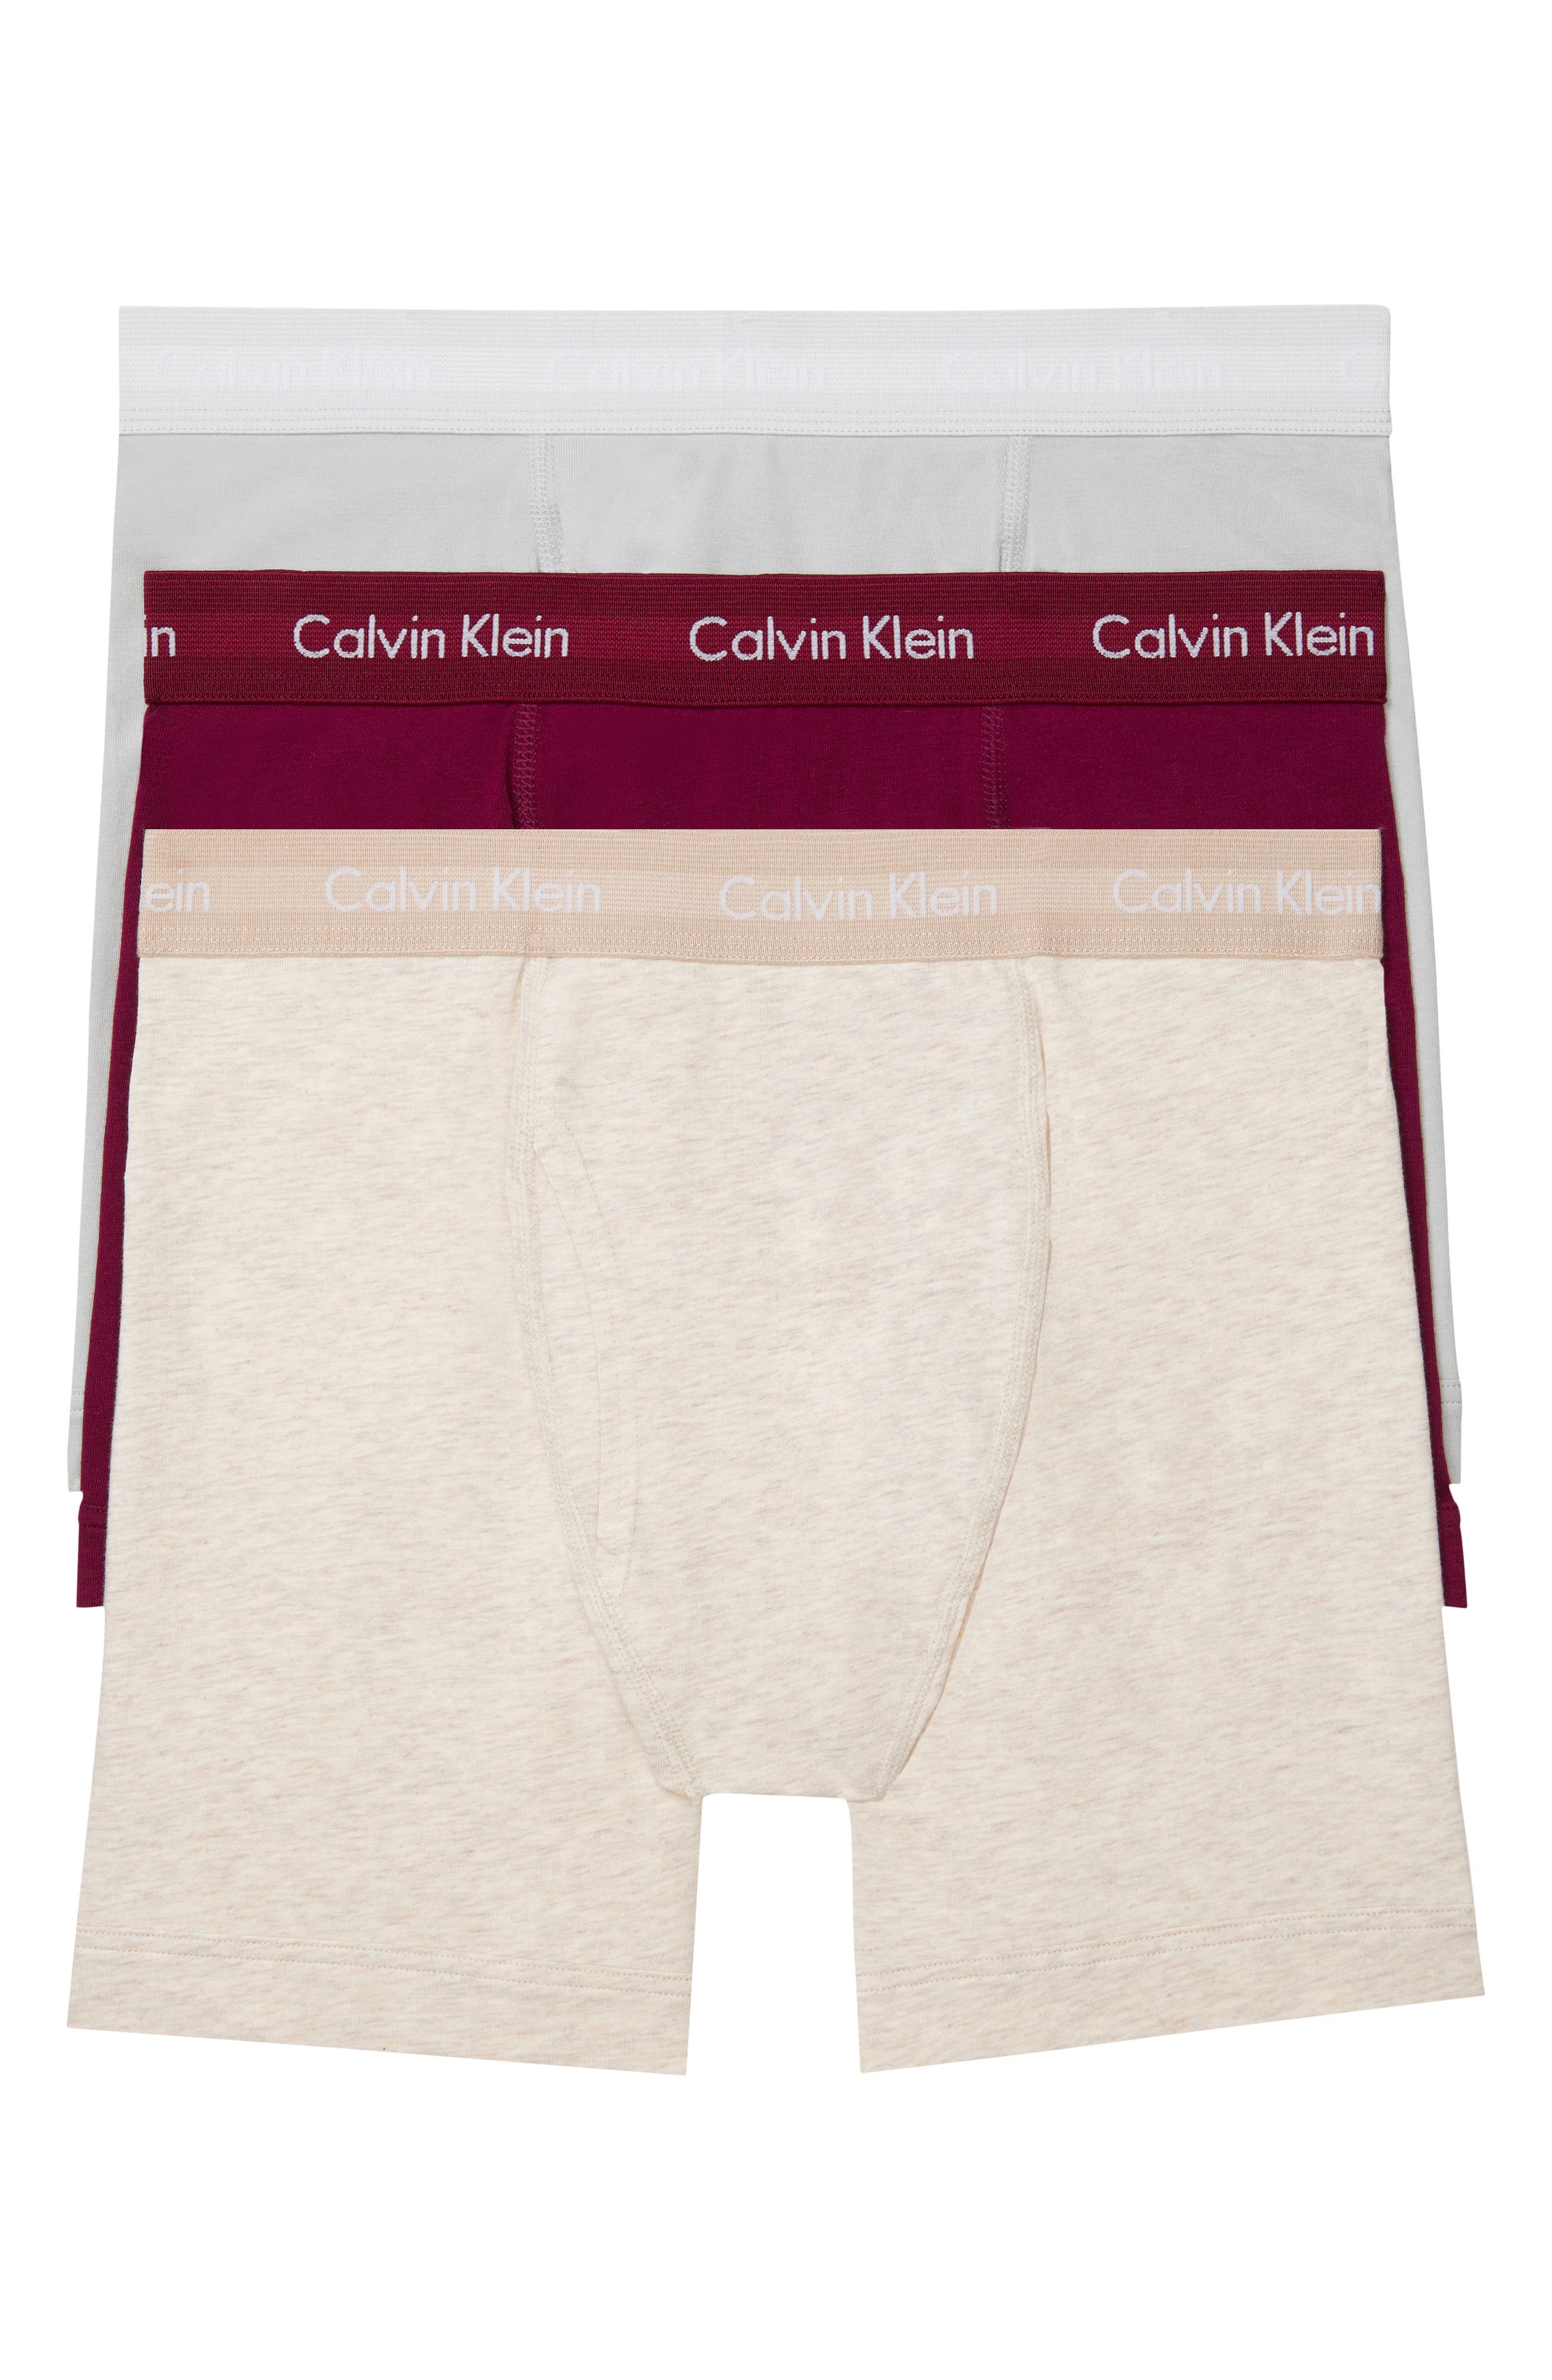 calvin klein underwear nordstrom rack